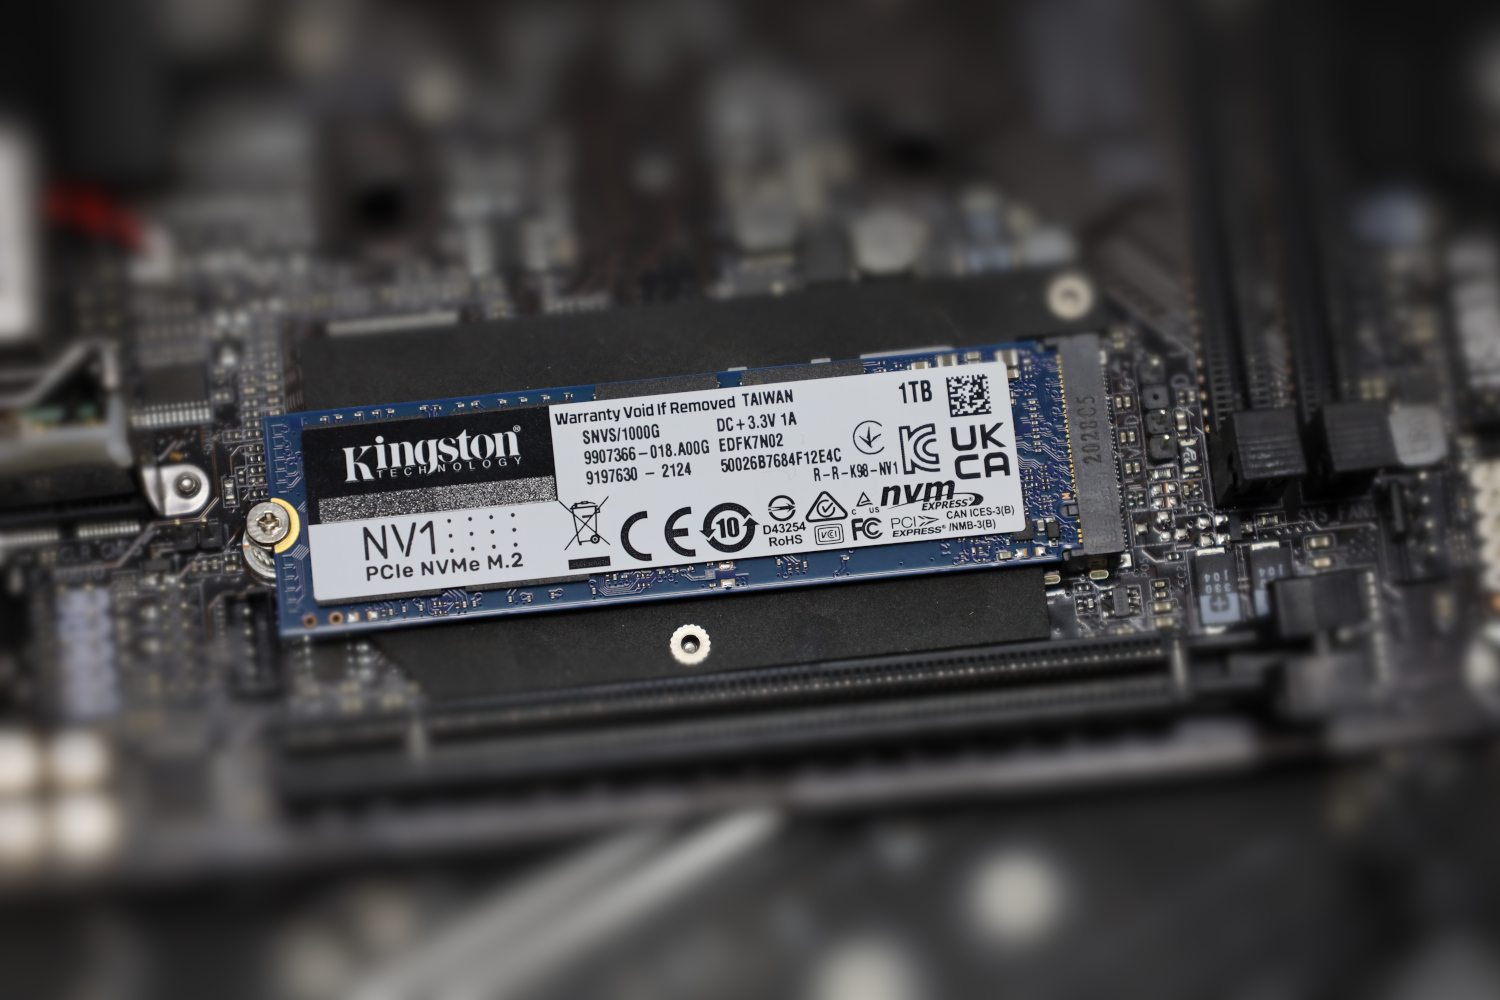 Kingston Kingston NV1-2 To M.2 NVMe PCIe 3.0 x4 SSD 